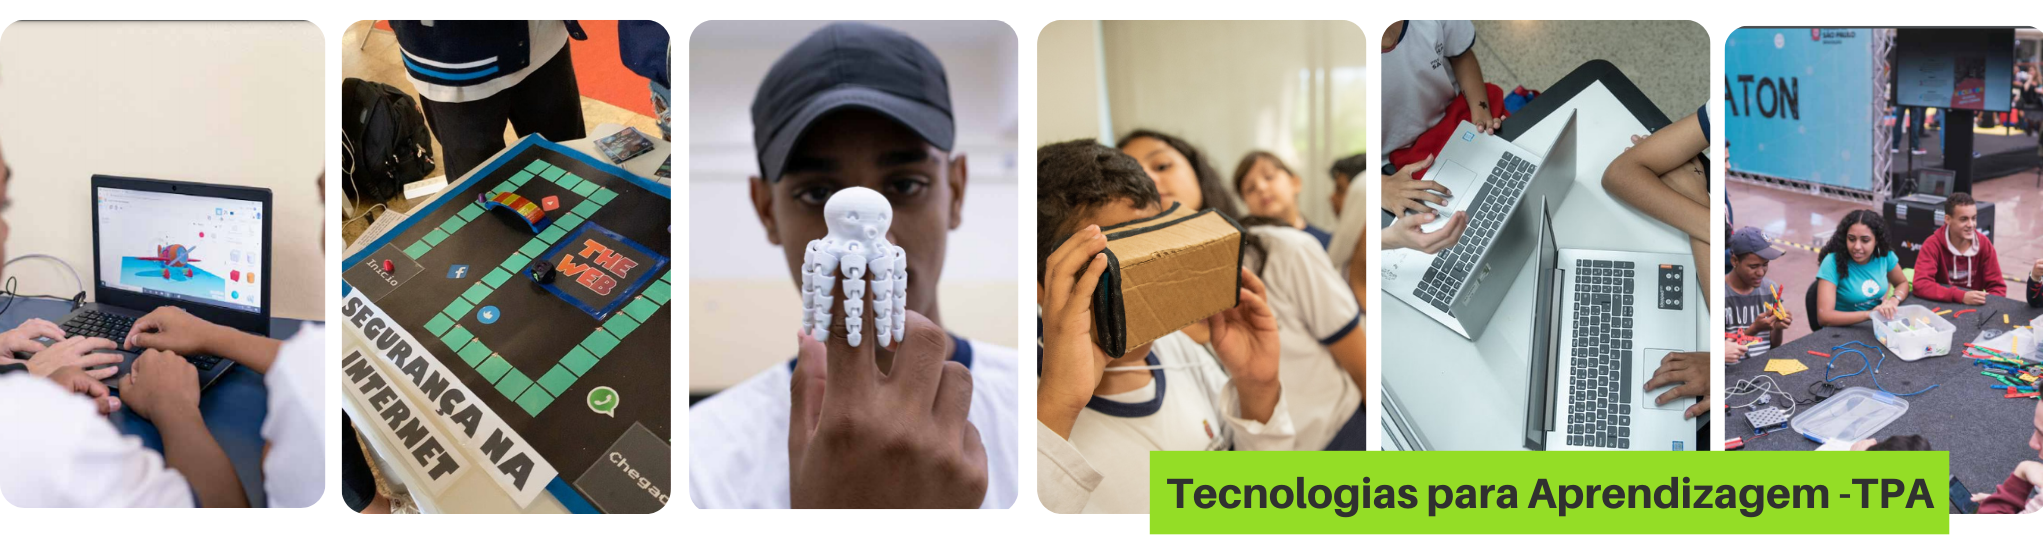 sequência de imagens de estudantes fazendo atividades que envolvem tecnologia